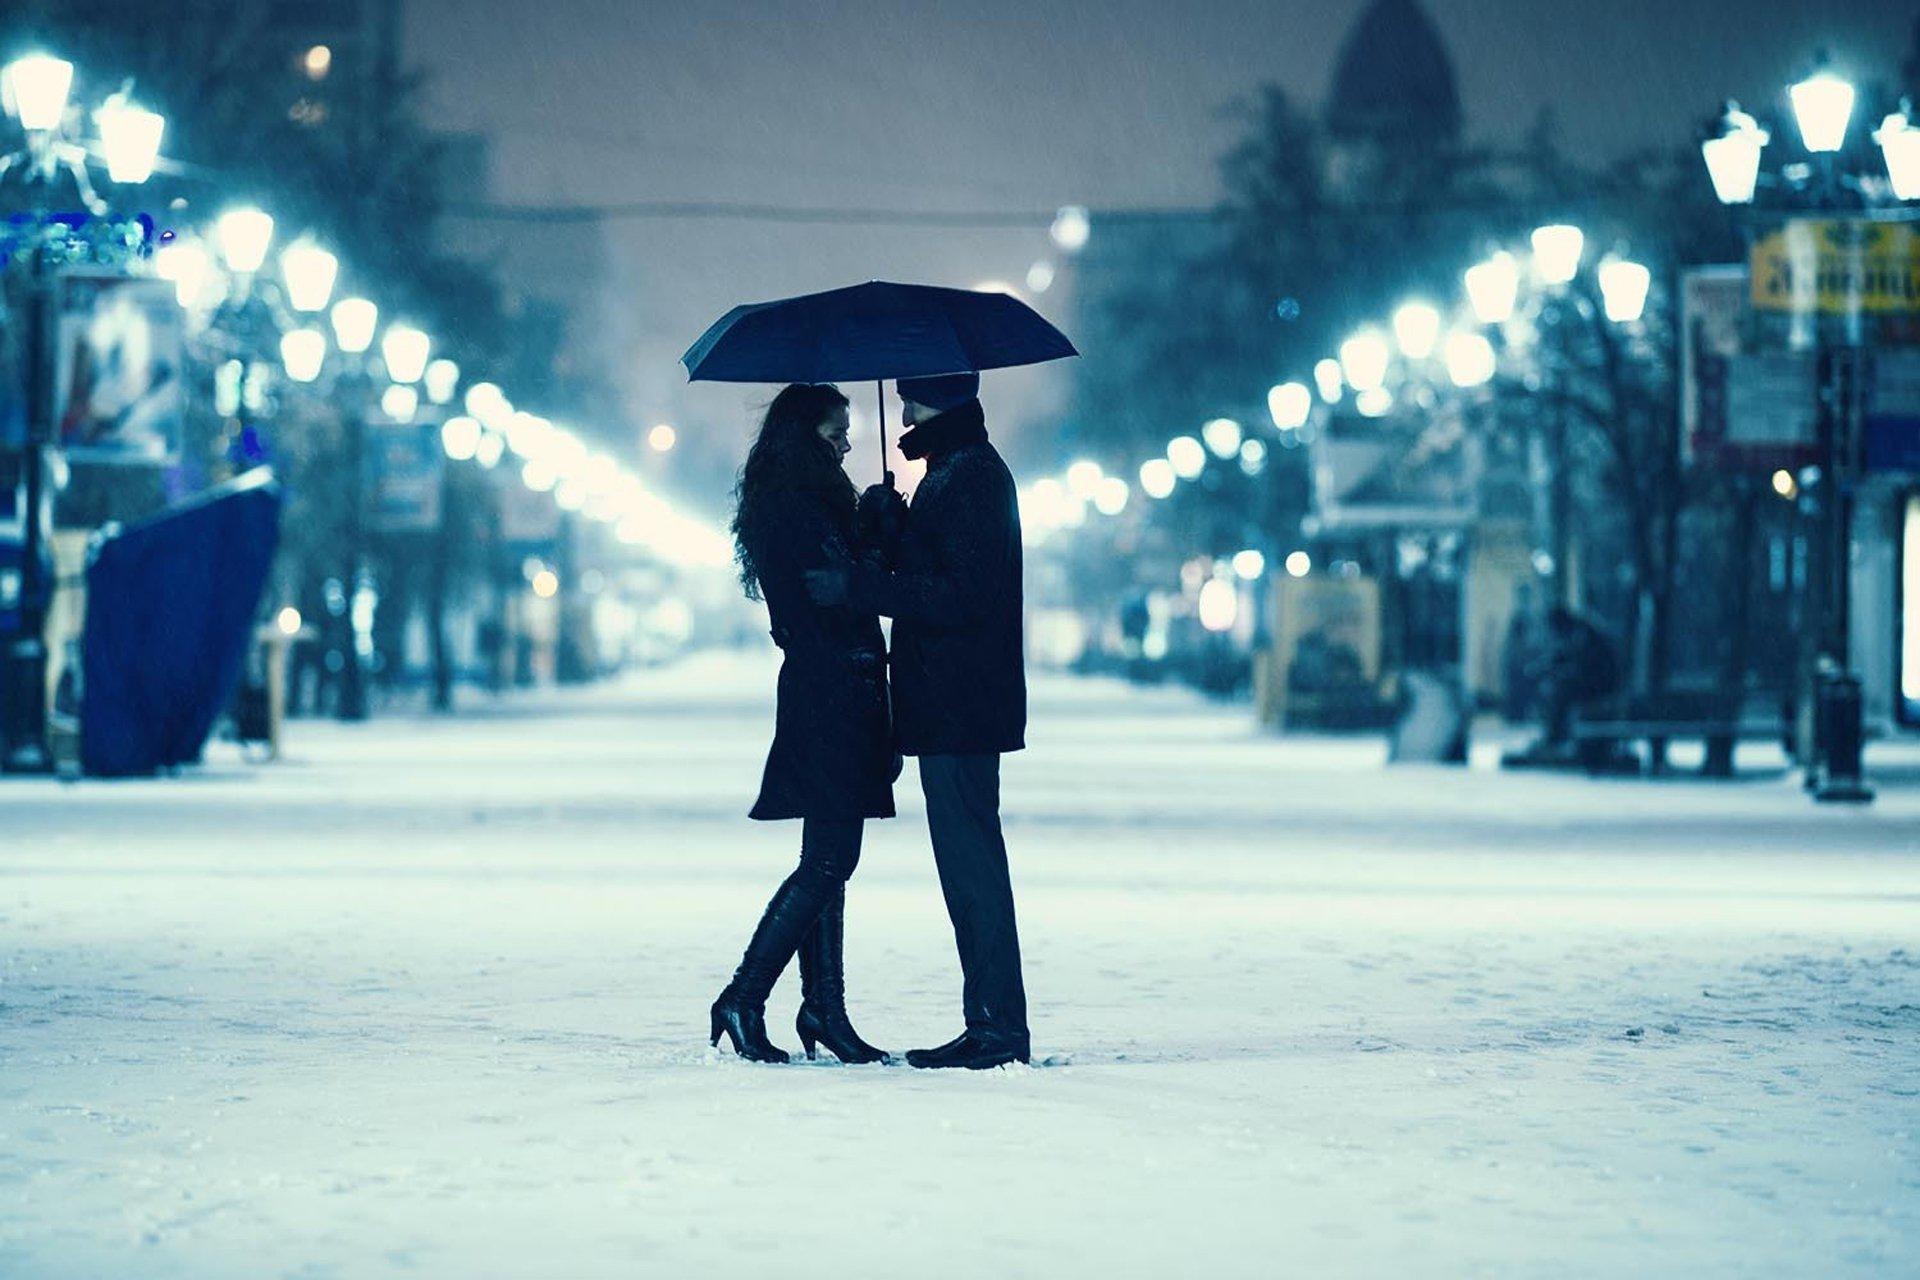 Гулять до поздна. Зимняя романтика. Пара гуляет зимой. Влюбленные в заснеженном городе. Вечерняя прогулка.